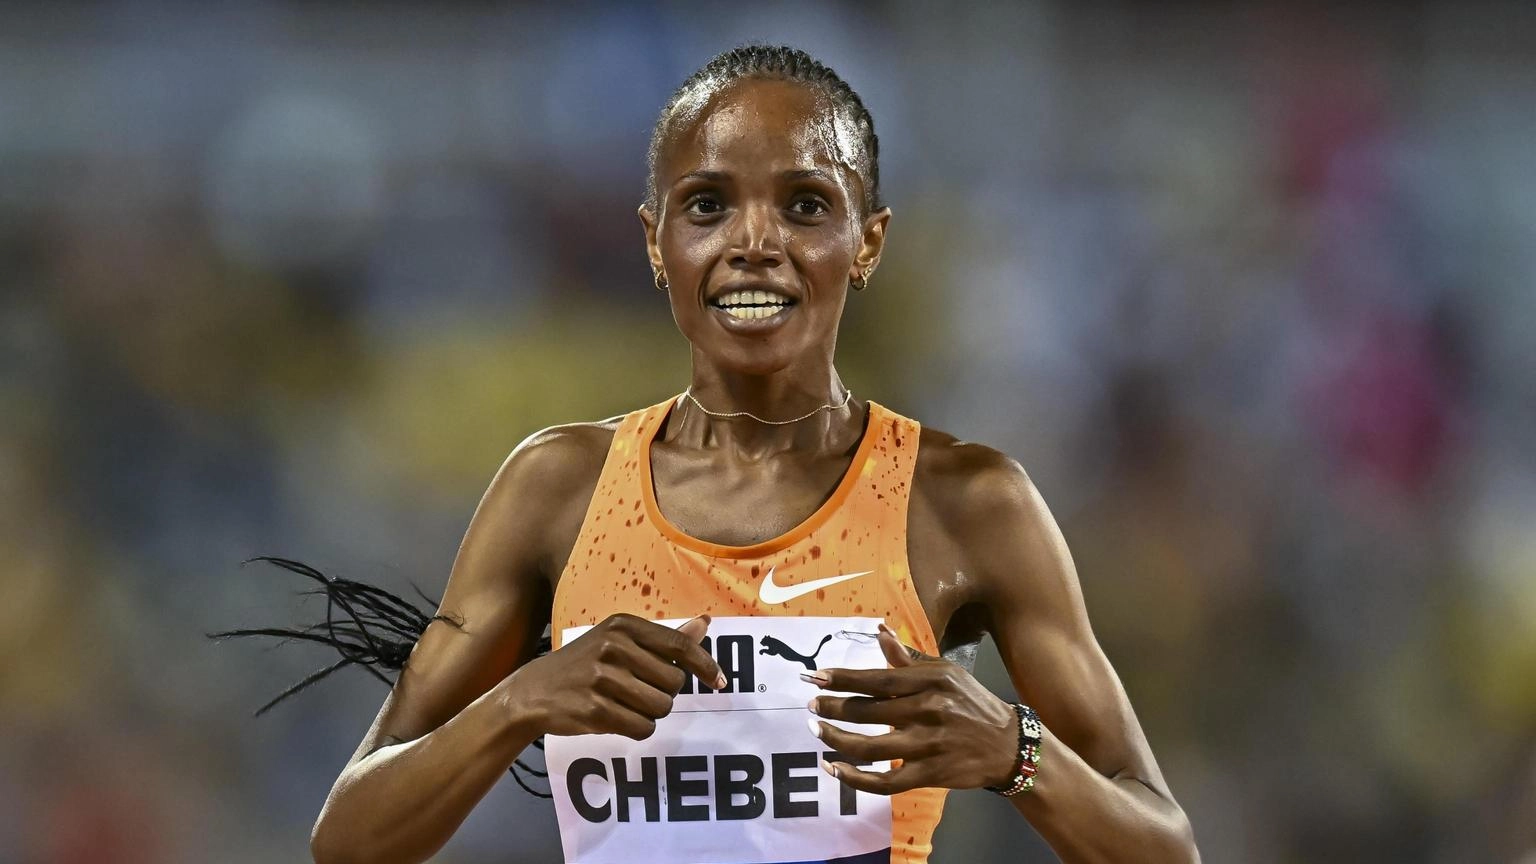 Atletica: keniana Chebet batte il record mondiale dei 10.000